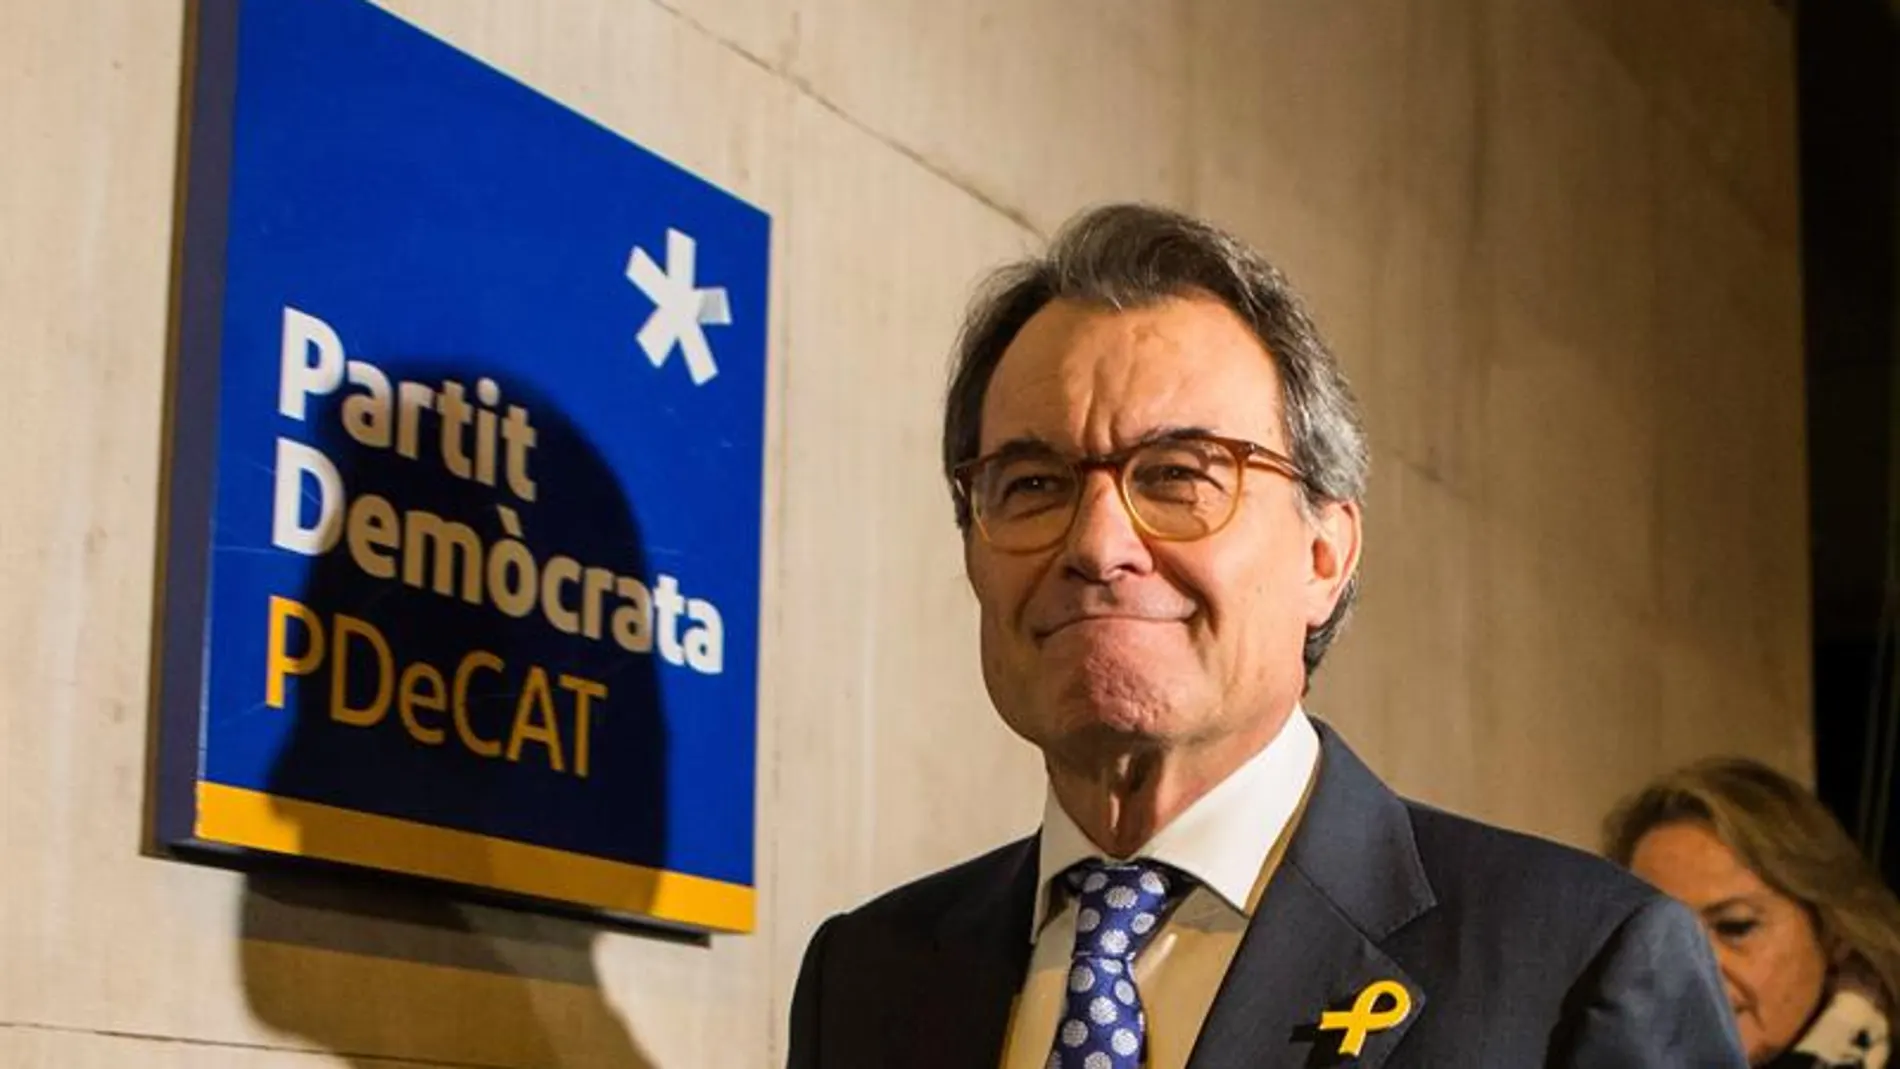 El expresidente de la Generalitat y presidente del PDeCAT, Artur Mas